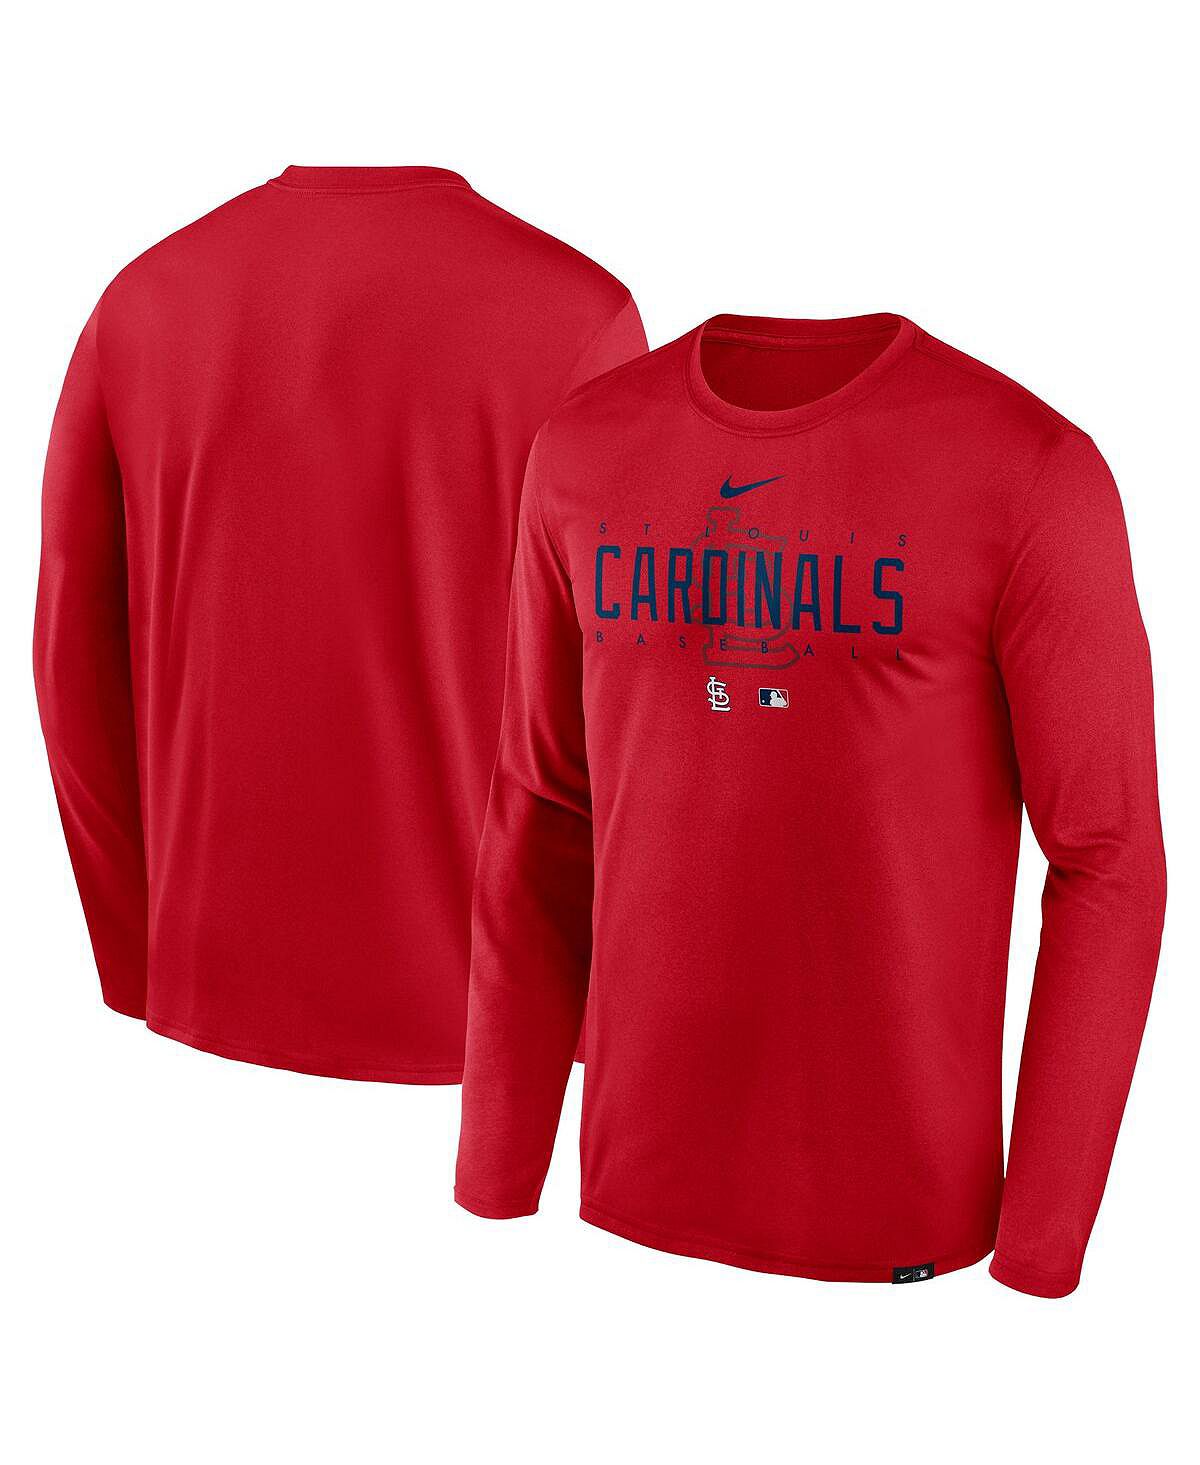 Мужская красная футболка с длинным рукавом с логотипом команды St. Louis Cardinals Authentic Collection Legend Performance Nike